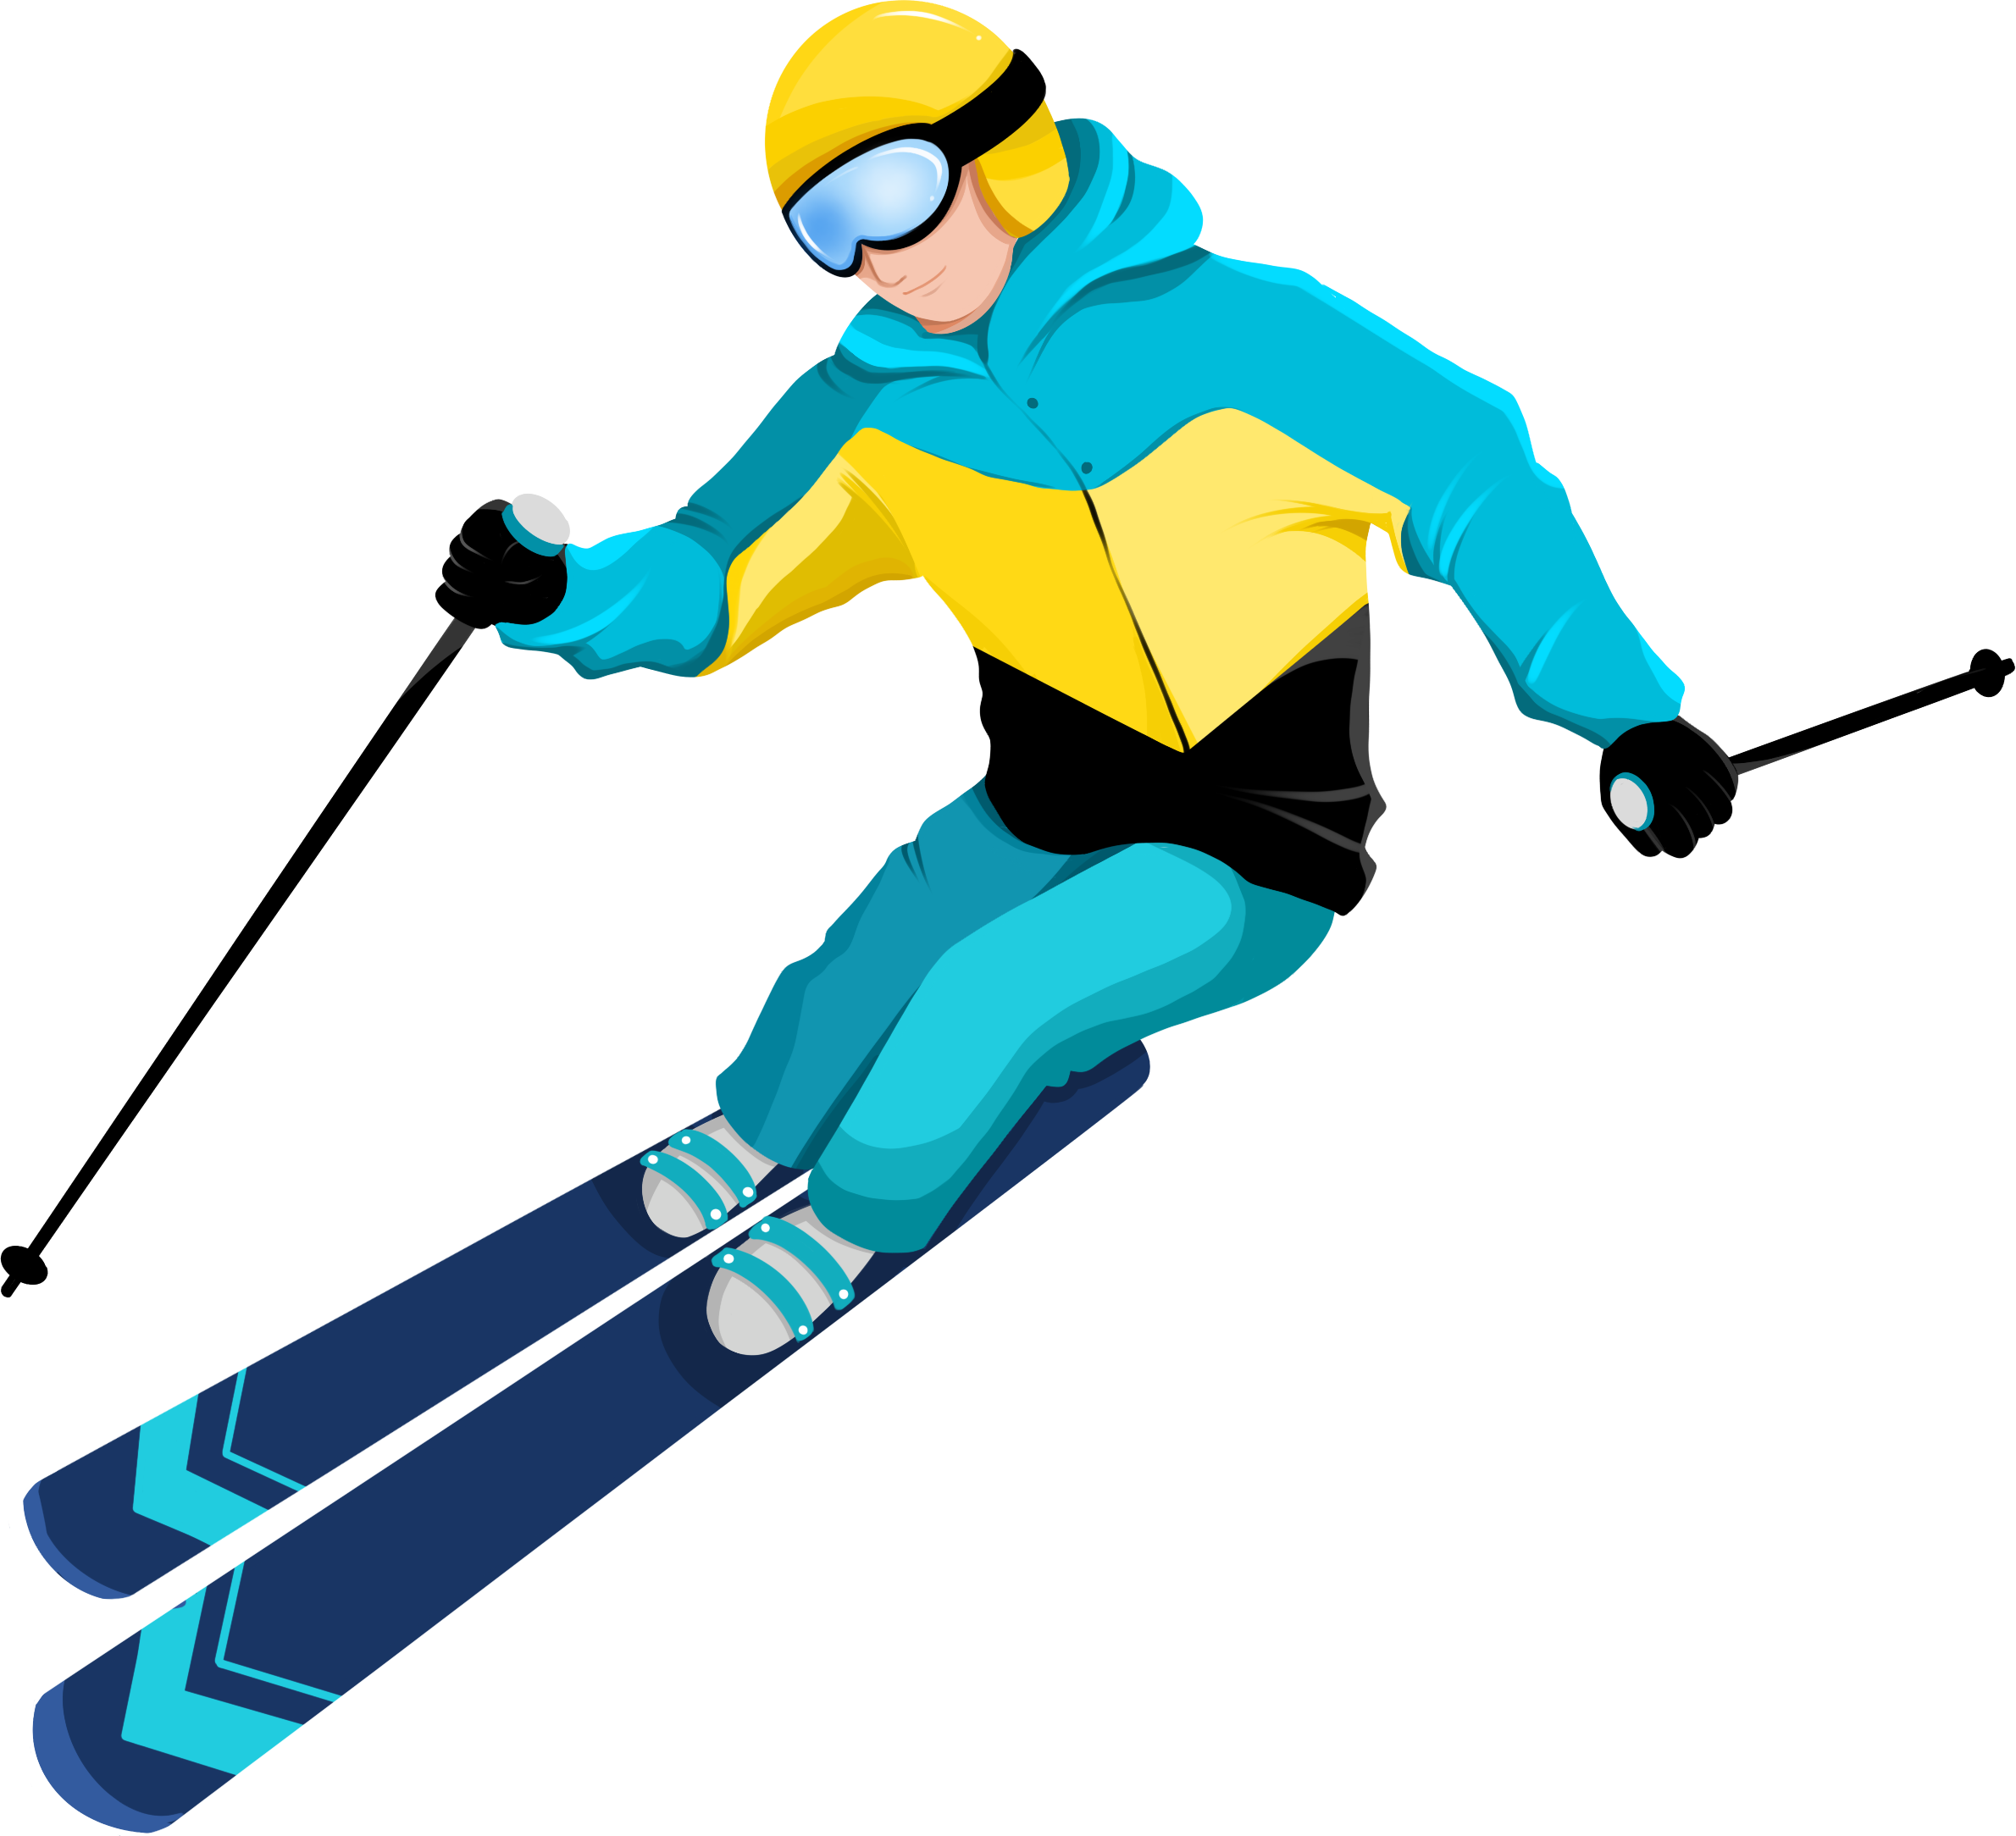 2022年北京冬奧會雙板滑雪卡通人物圖片